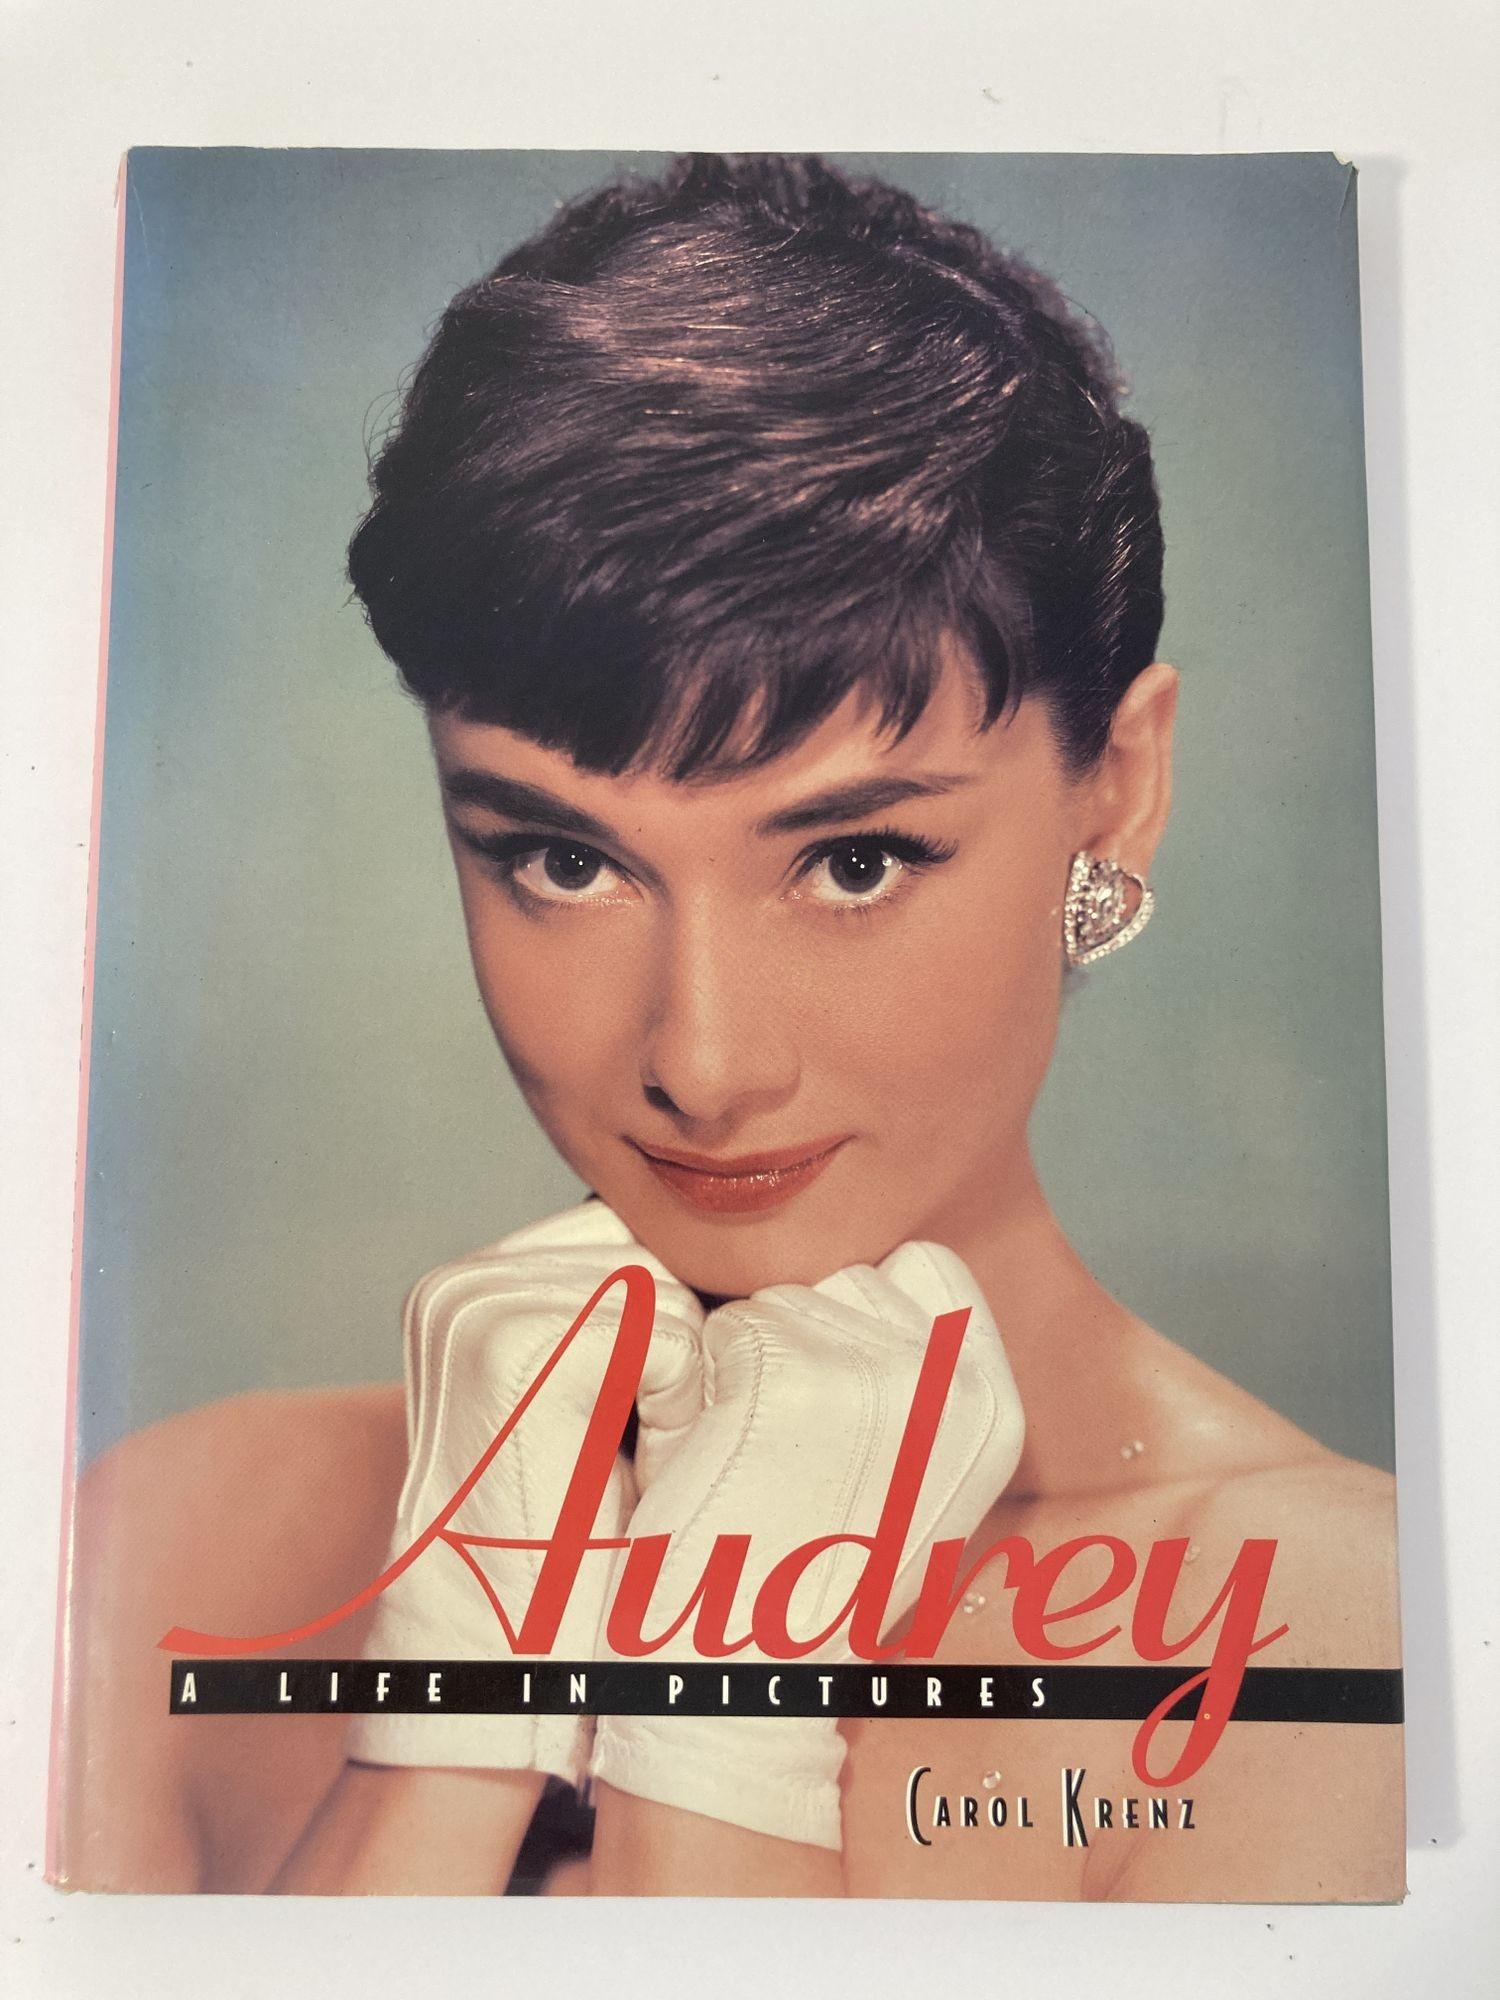 Audrey: Ein Leben in Bildern Carol Krenz Metrobooks, 1997.
Schöne farbige Bilder von Audrey, die Sie lieben werden. Wunderbarer großer Bildband. Erinnern Sie sich an Audrey in all ihren Lieblingsbildern und -posen.
Virtuelles persönliches